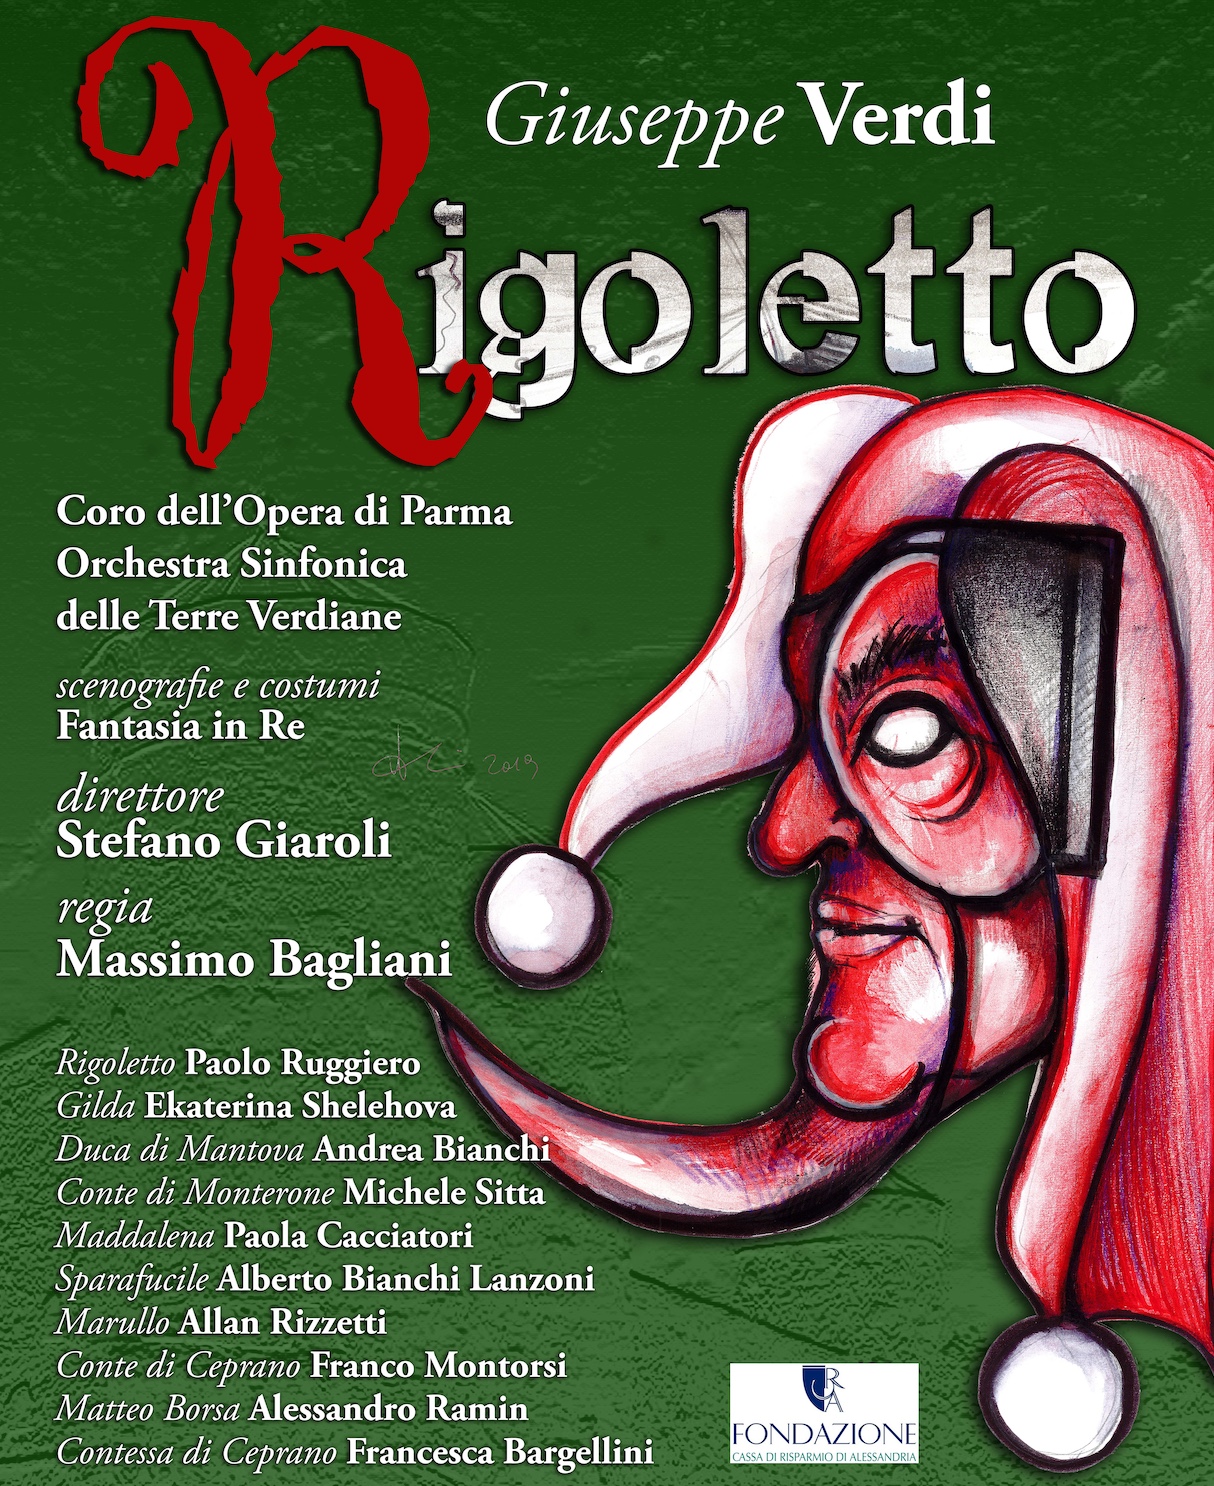 Rigoletto 24 FEBBRAIO 2023 - venerdì - ore 21.00